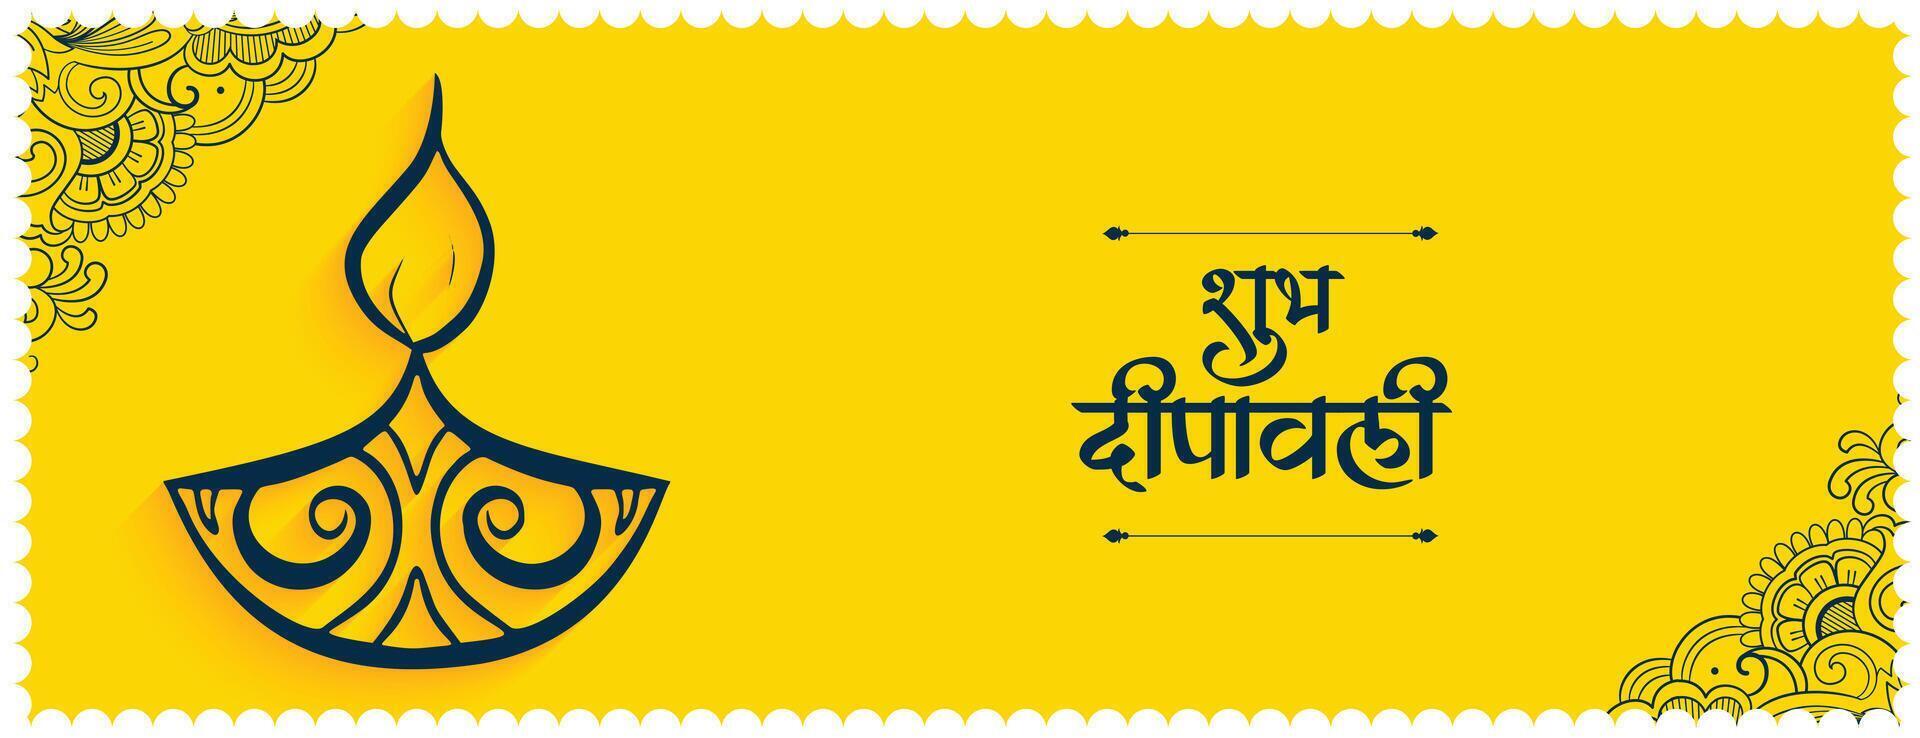 shubh deepavali amarillo bandera con étnico diya diseño vector